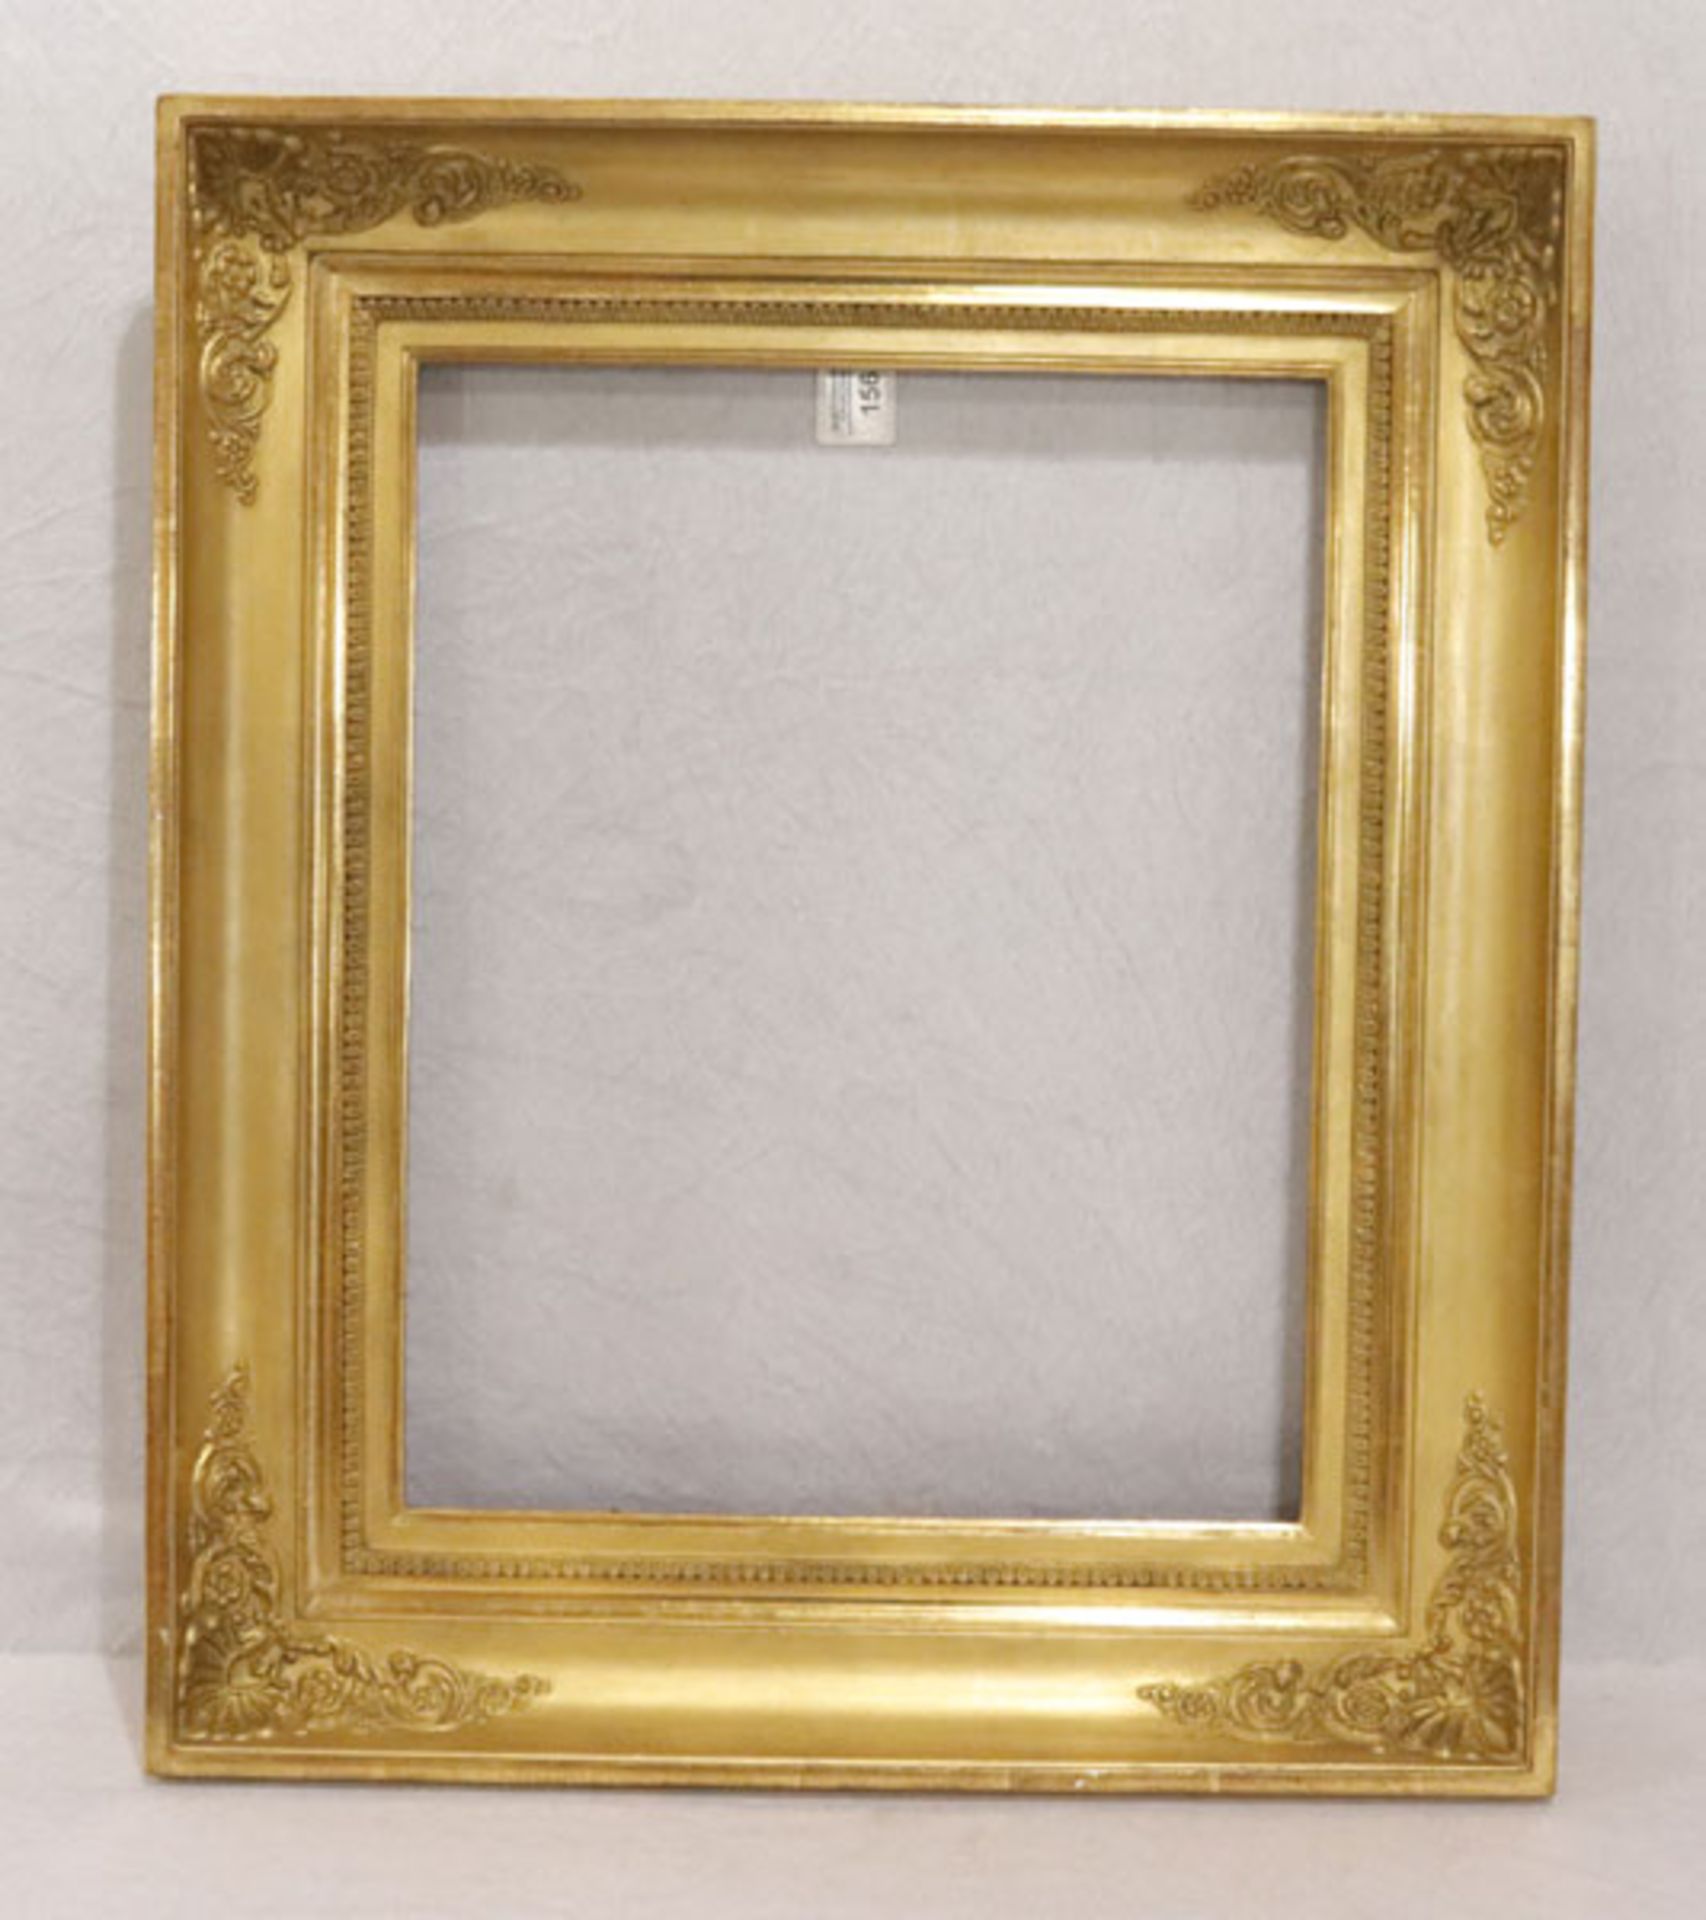 Gemälderahmen mit reliefiertem Dekor, goldfarben, beschädigt, Falzmaß 47,5 cm x 37,5 cm